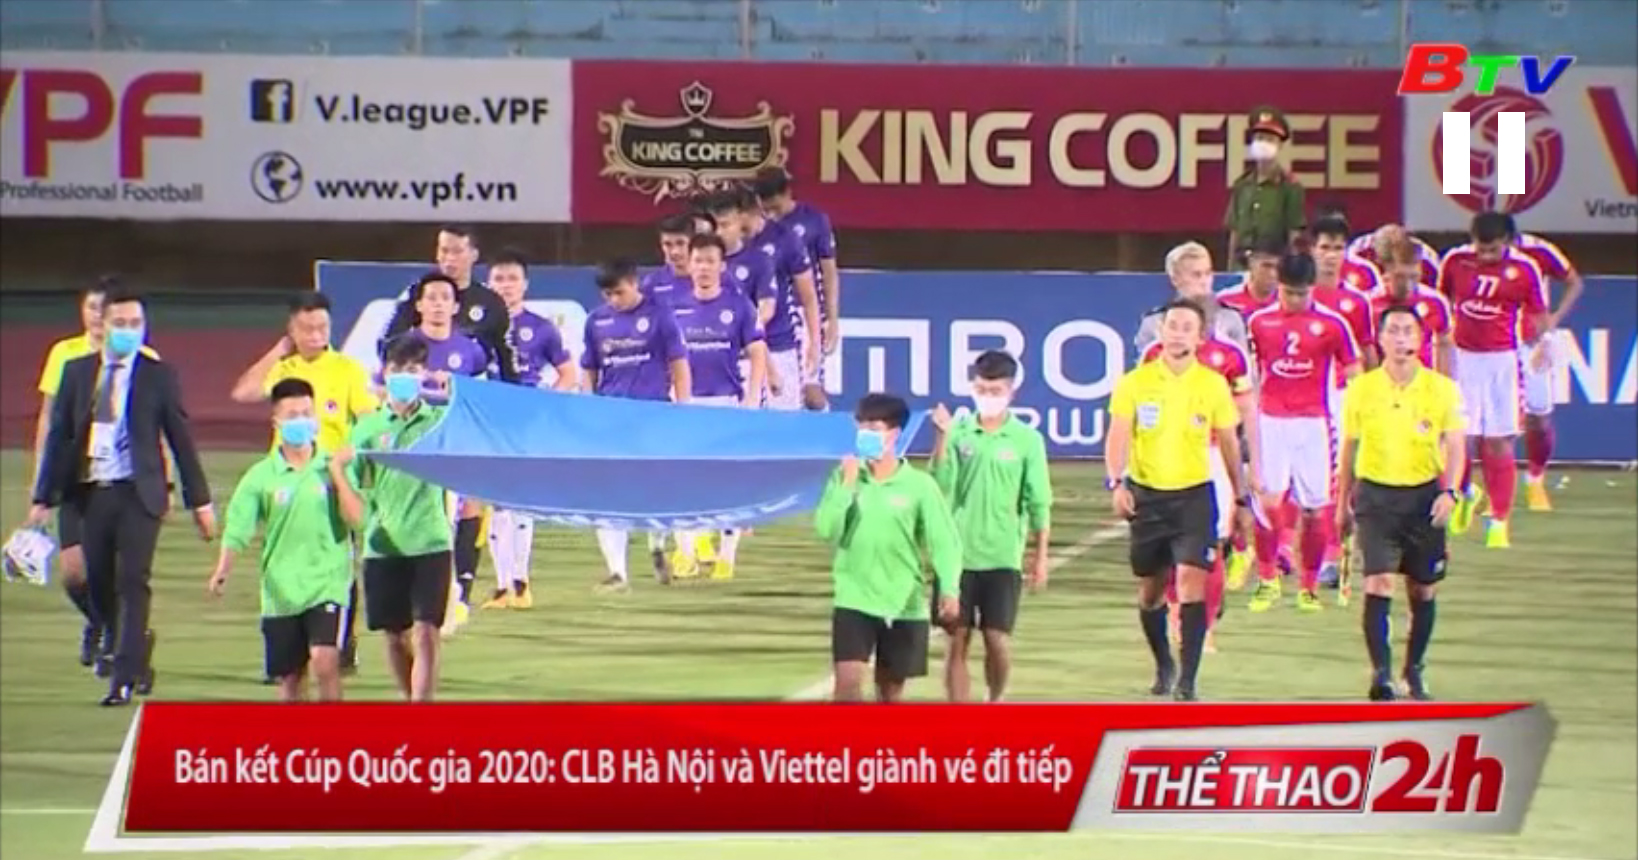 Bán kết Cúp Quốc gia 2020 - CLB Hà Nội và Viettel giành vé đi tiếp